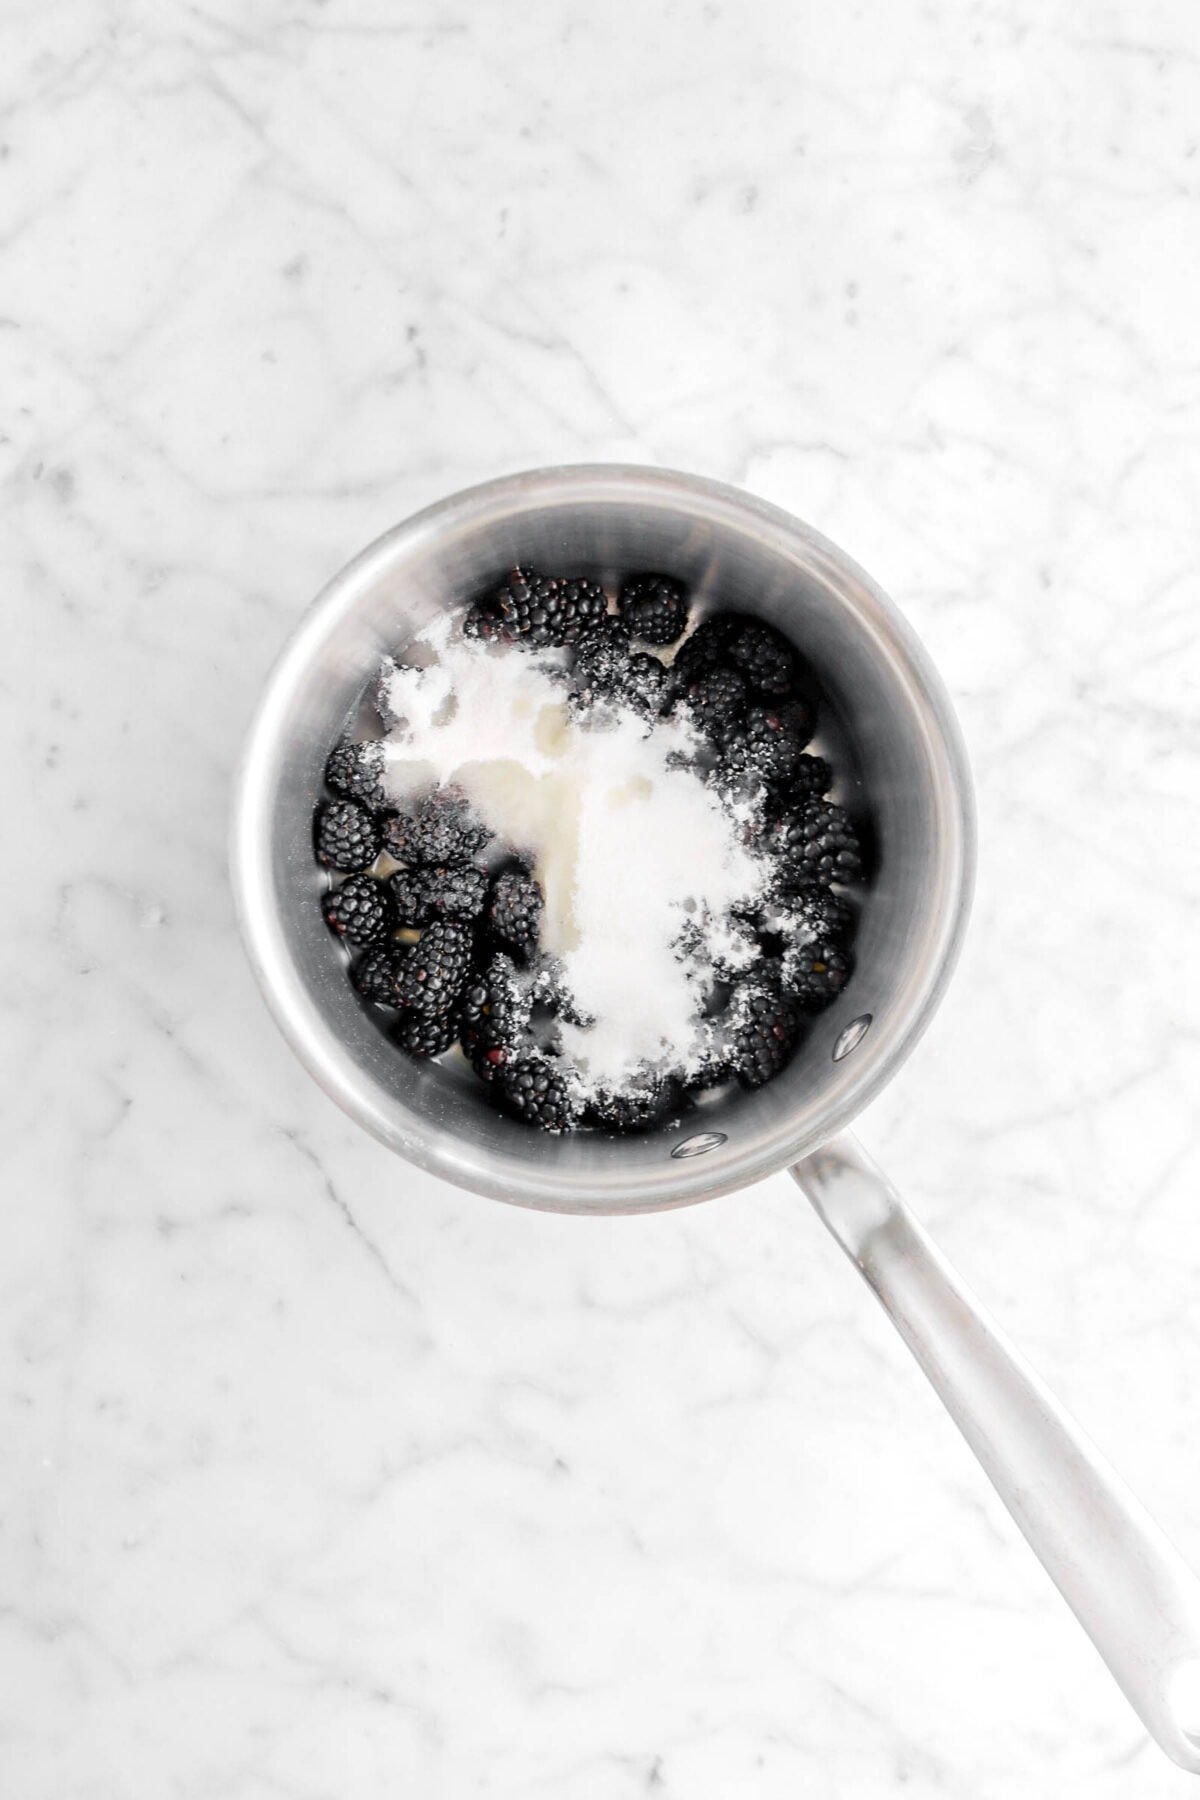 blackberry, sugar, and lemon juice in small saucepan